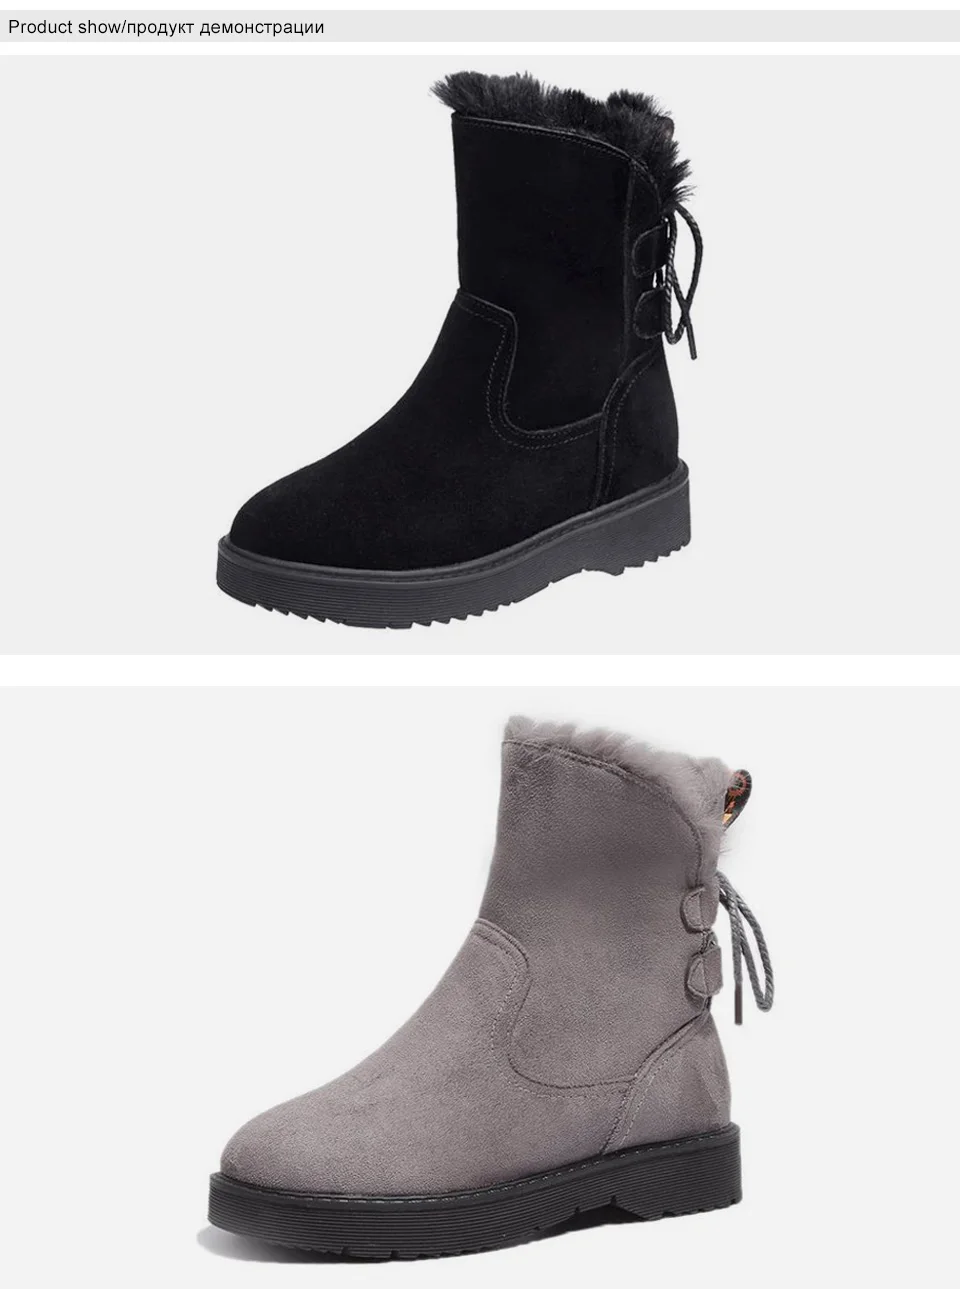 Ботильоны зимние ботинки для женщин, теплая обувь женские ботинки на меху зимние ботинки на платформе со шнуровкой Осенняя повседневная обувь с круглым носком DE